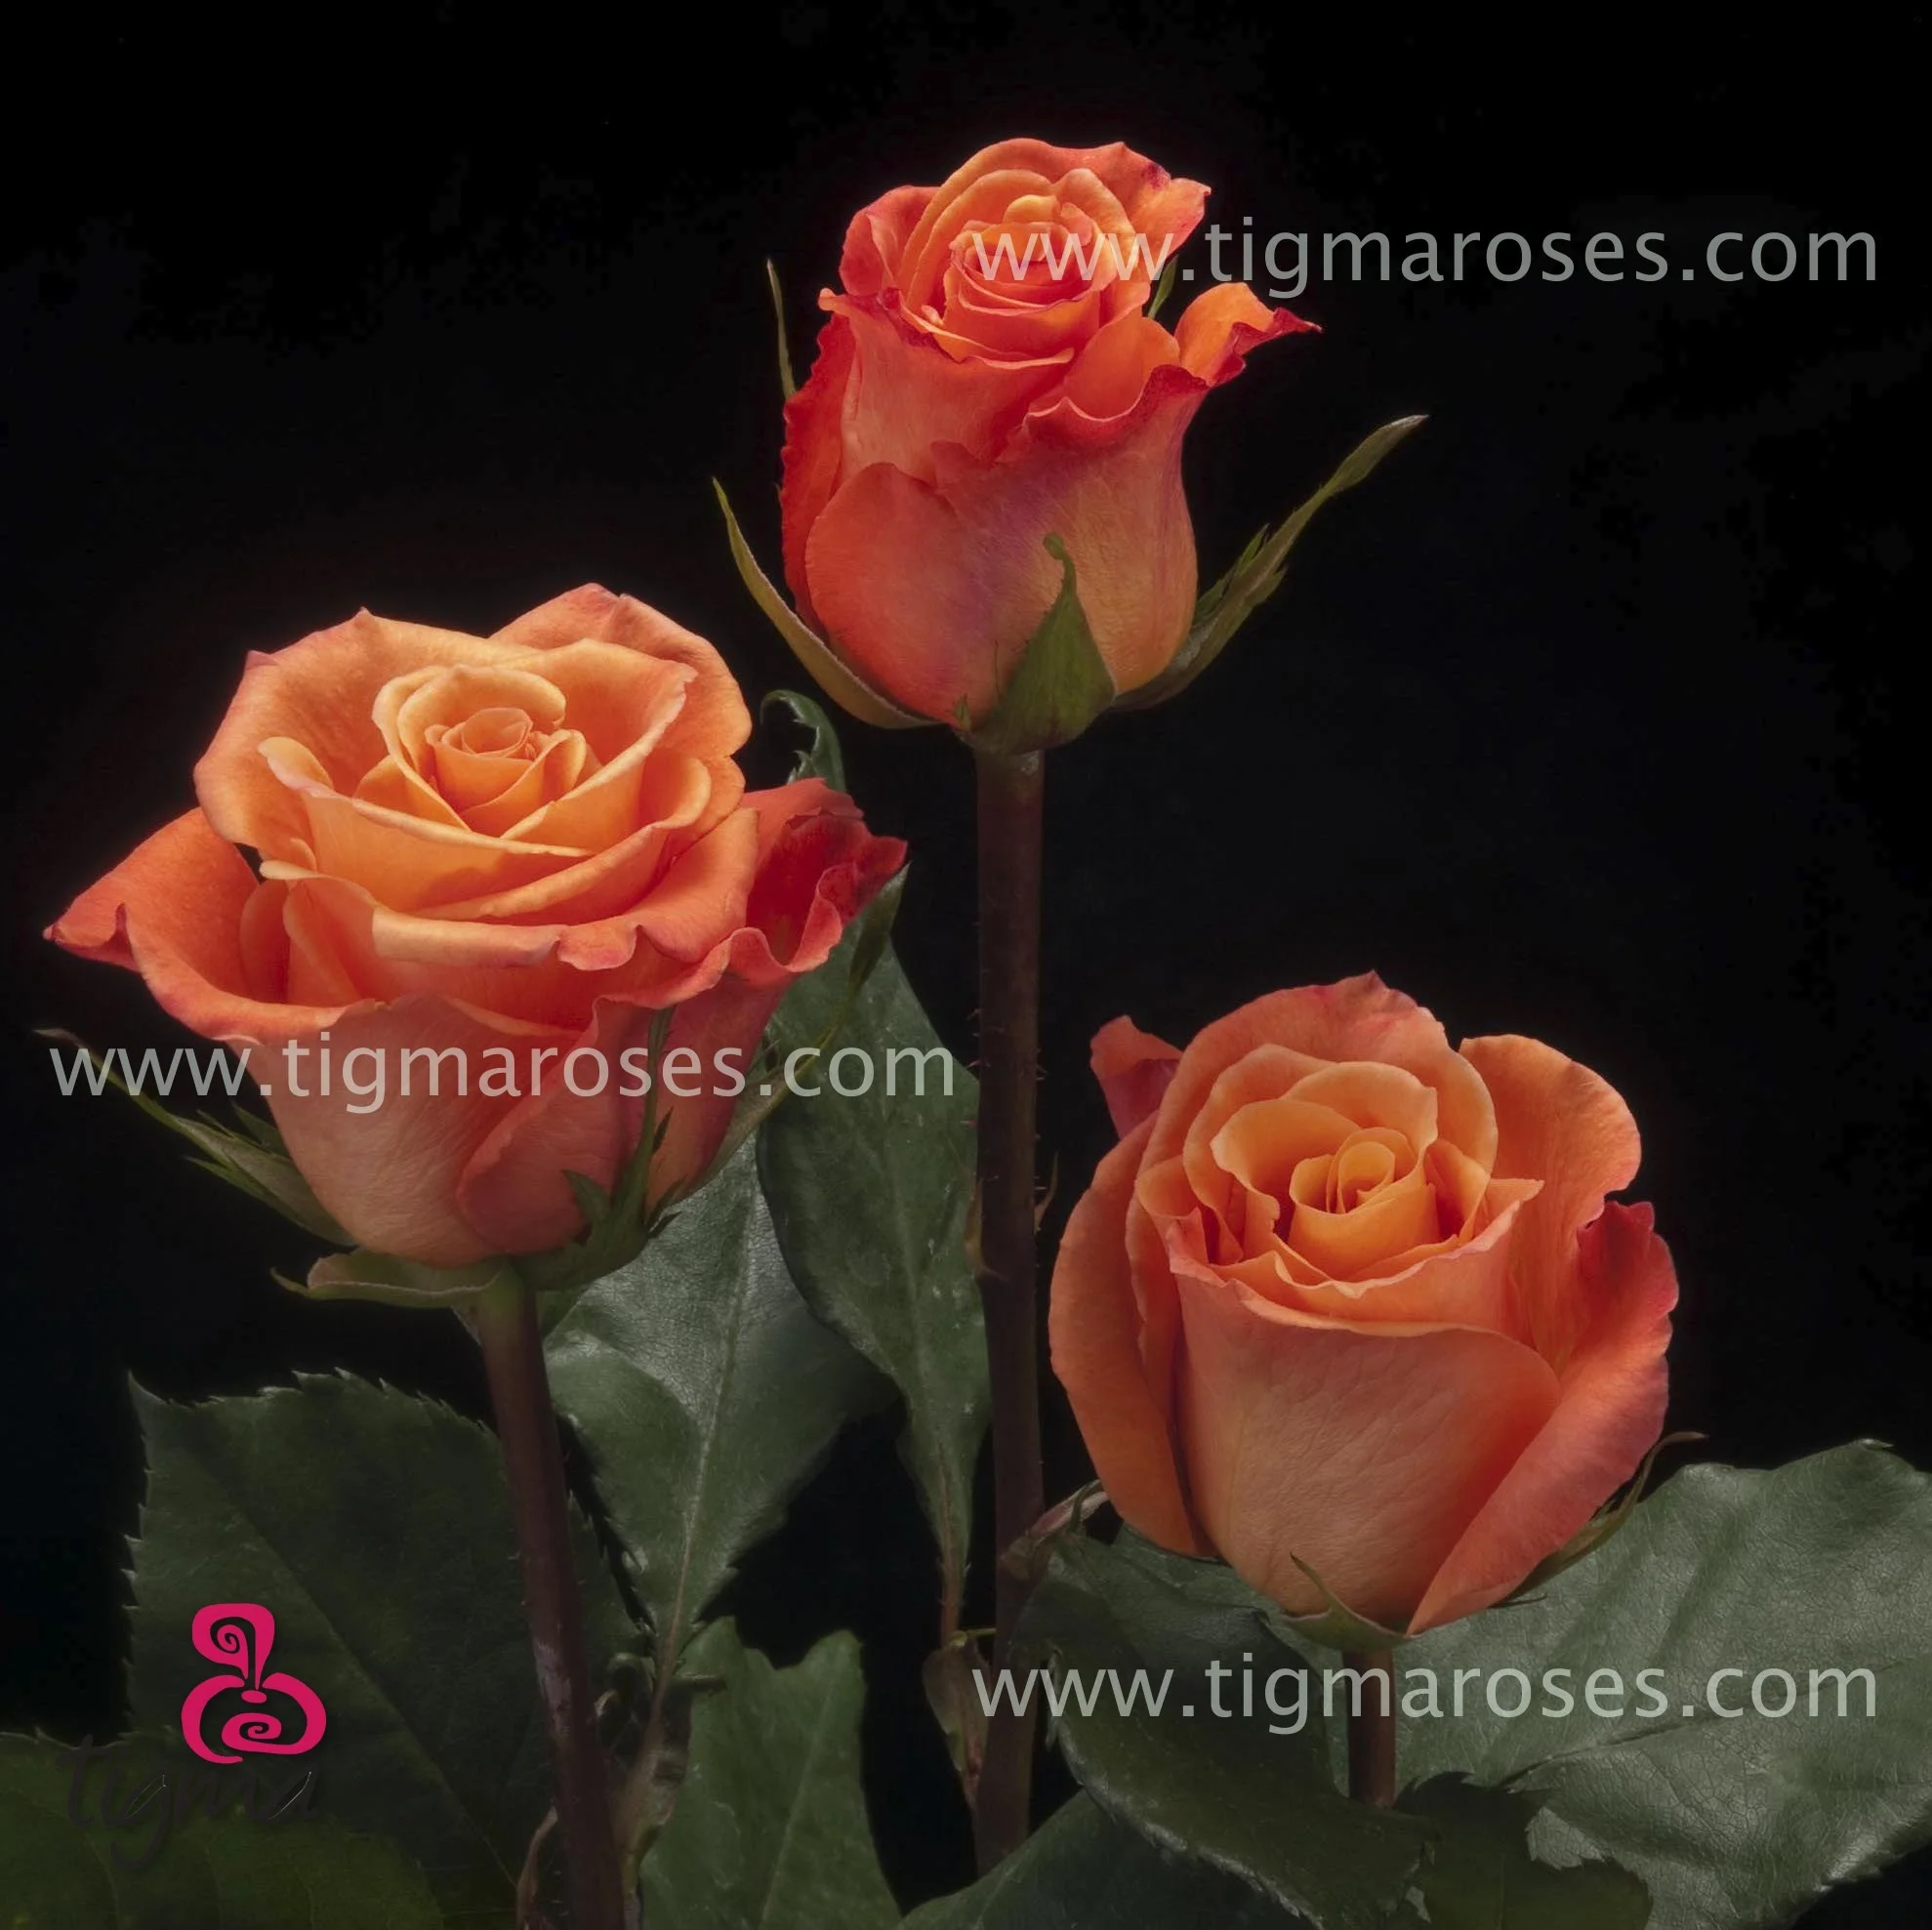 Orange Unique Rose